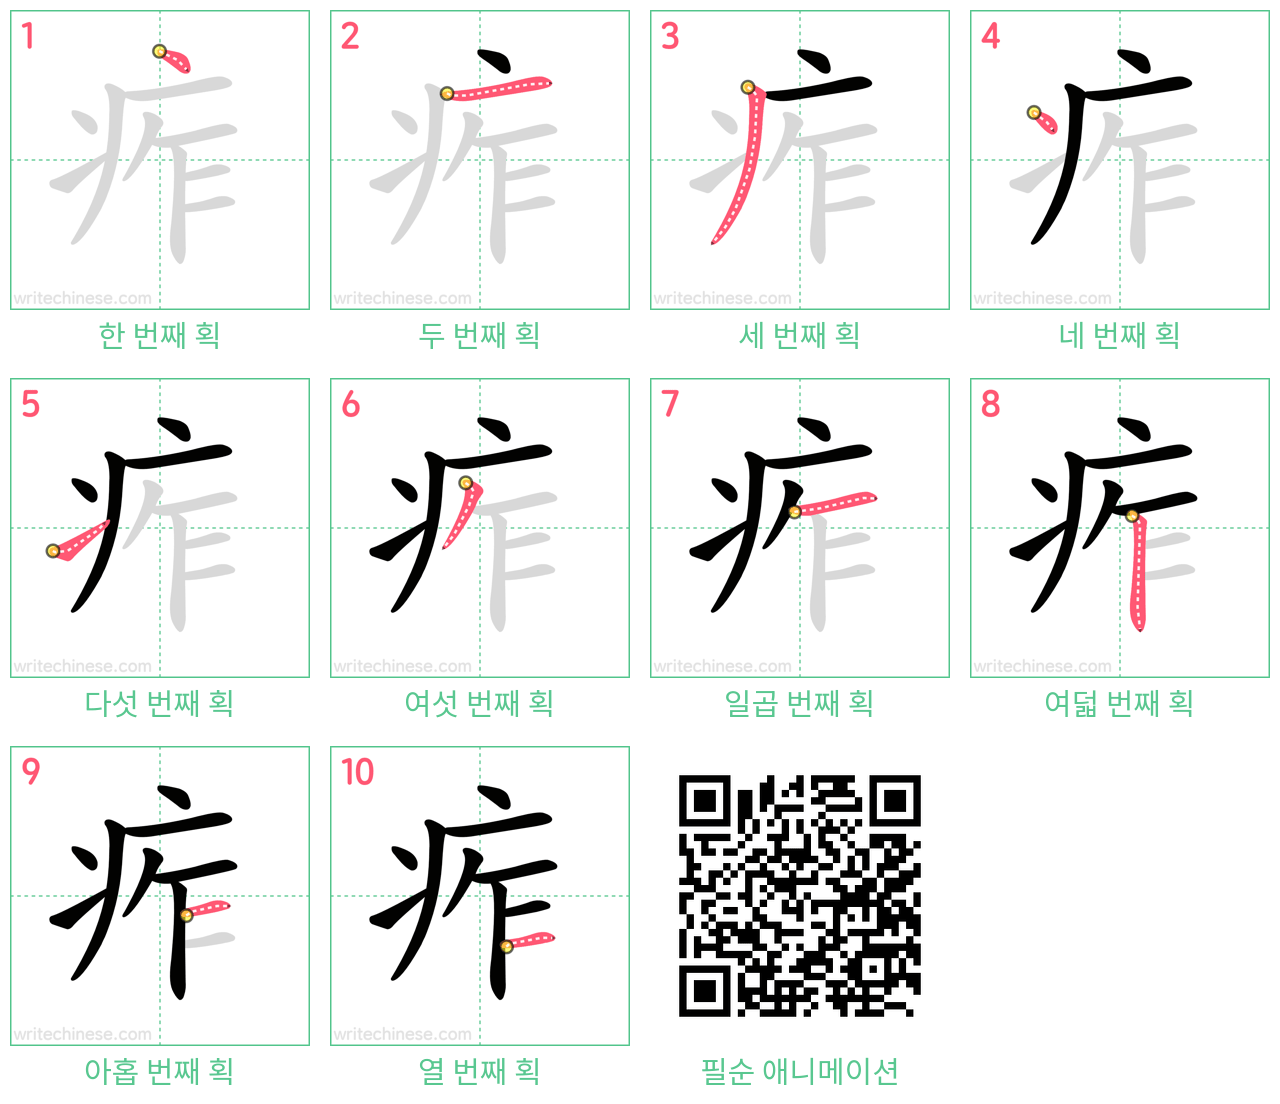 痄 step-by-step stroke order diagrams